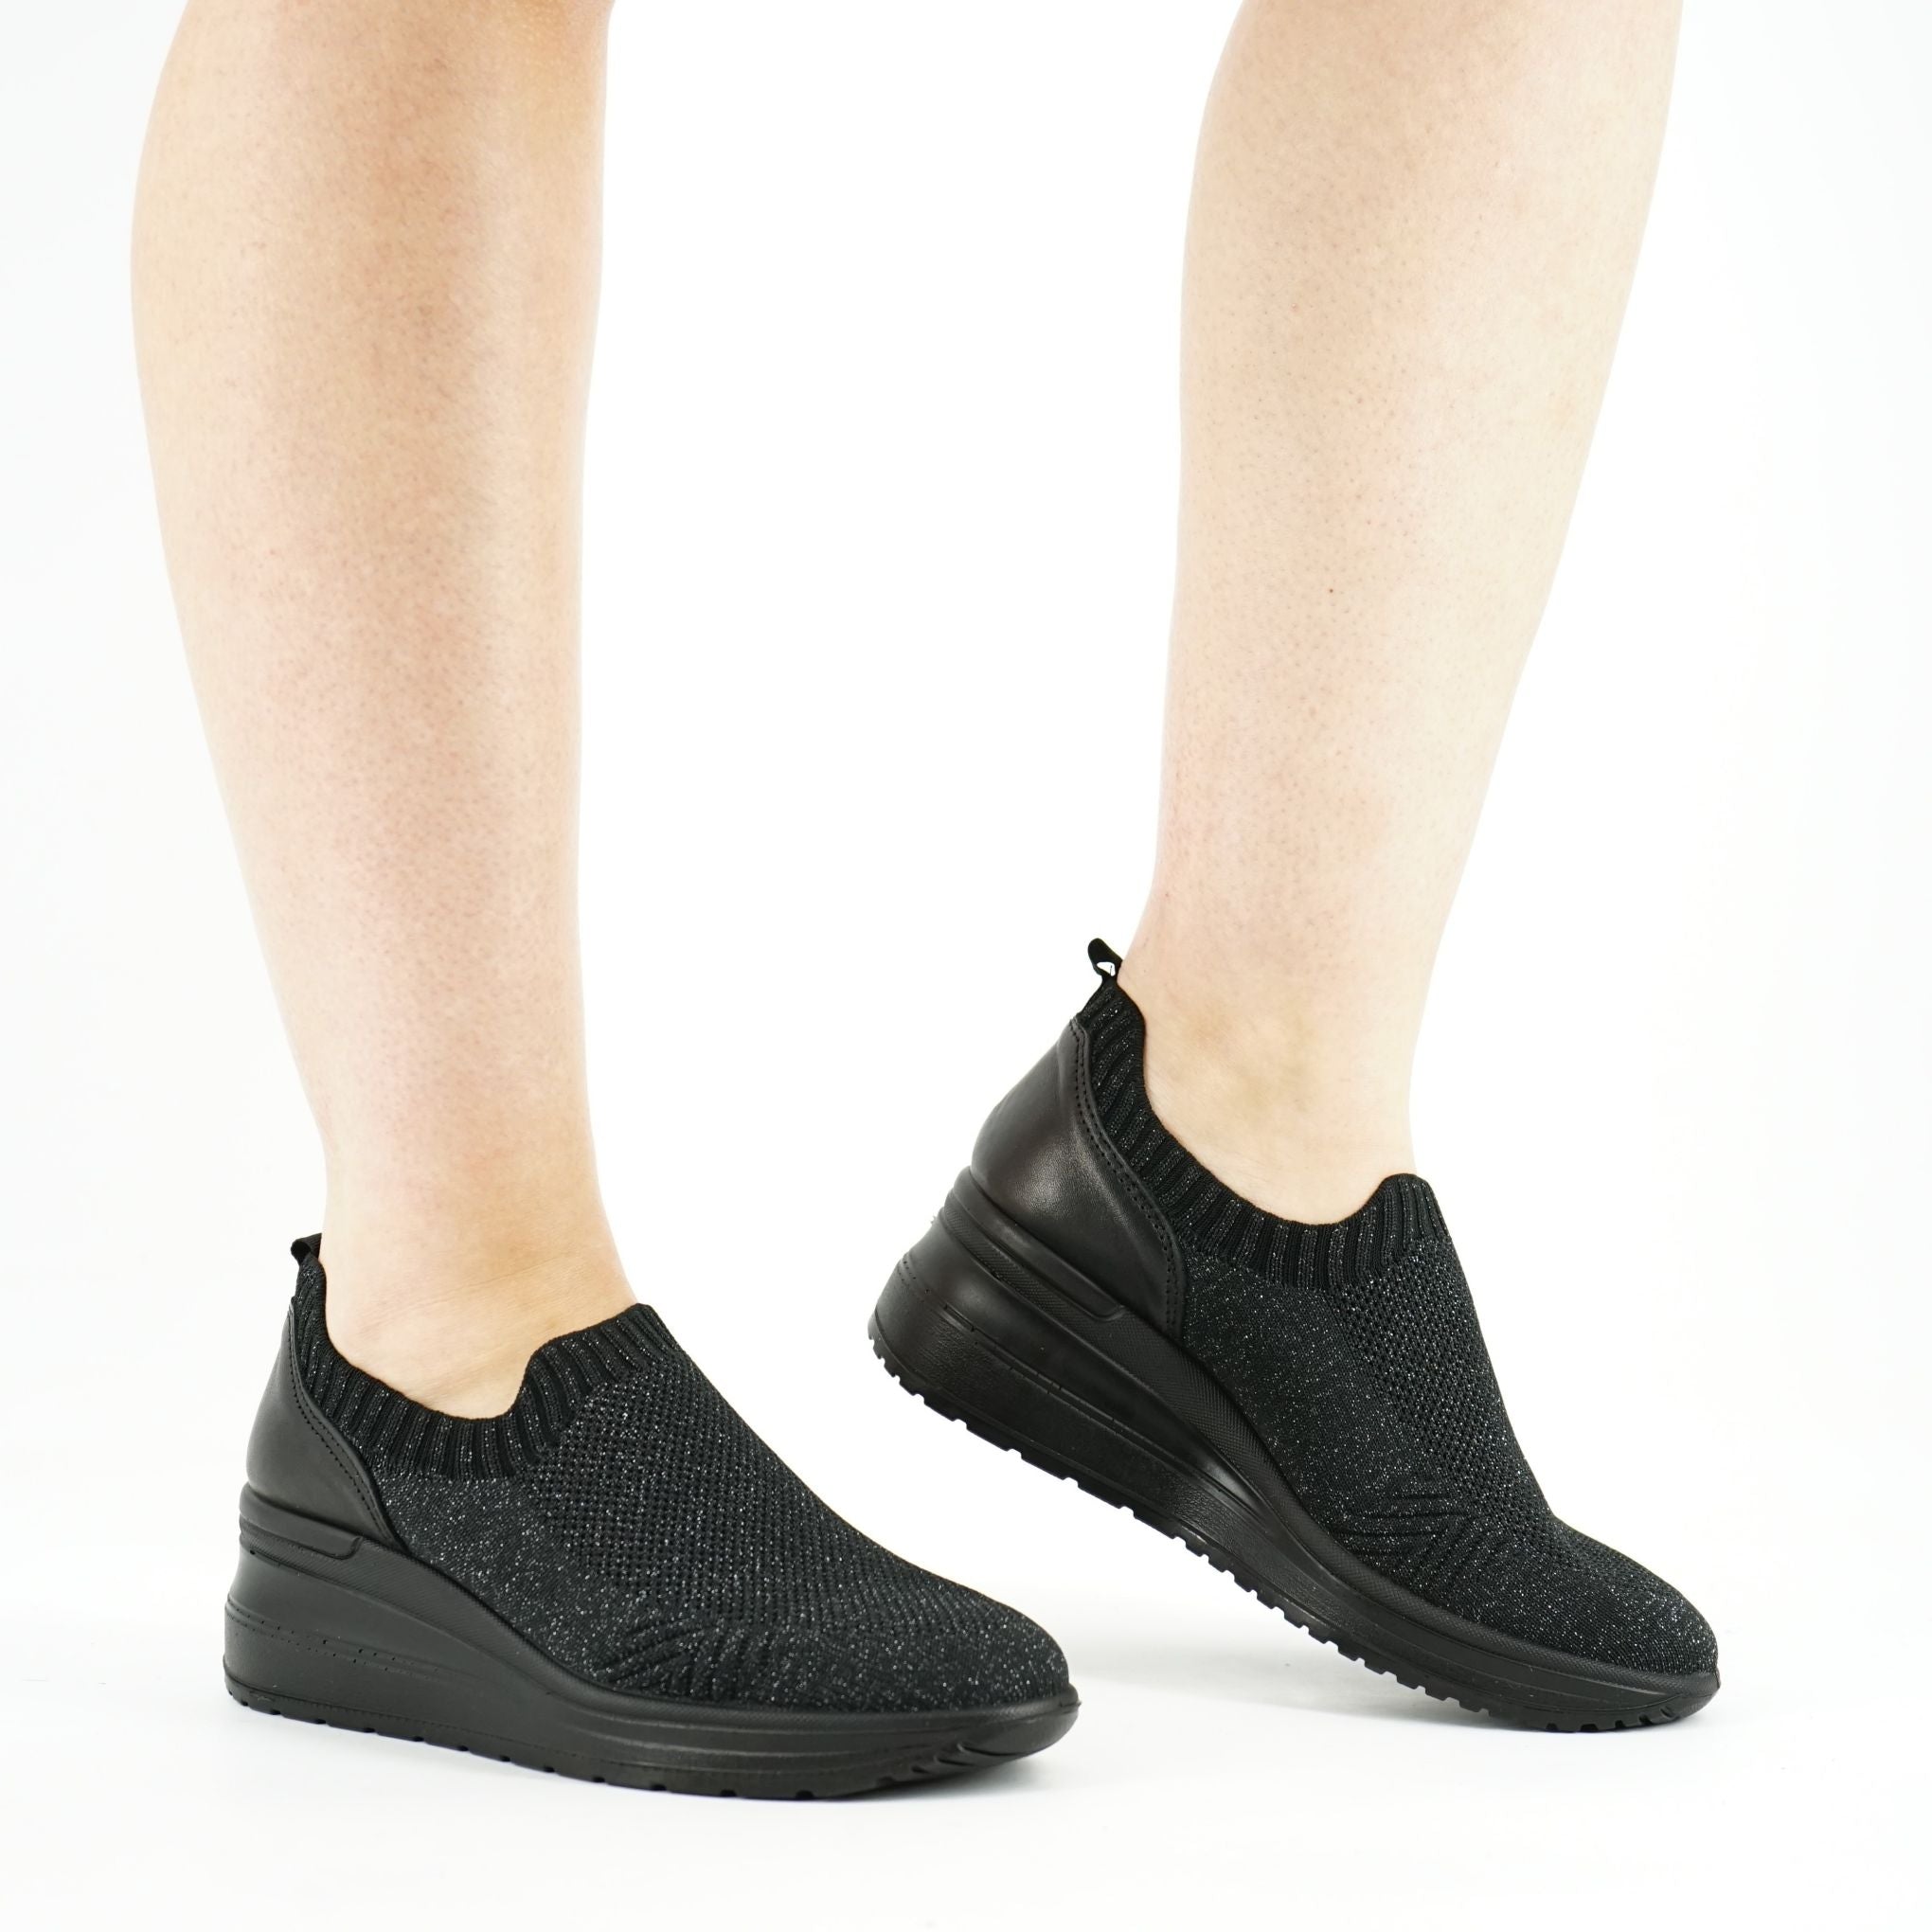 Sneakers slip on Enval Soft con zeppa in tessuto elastico: 3755000